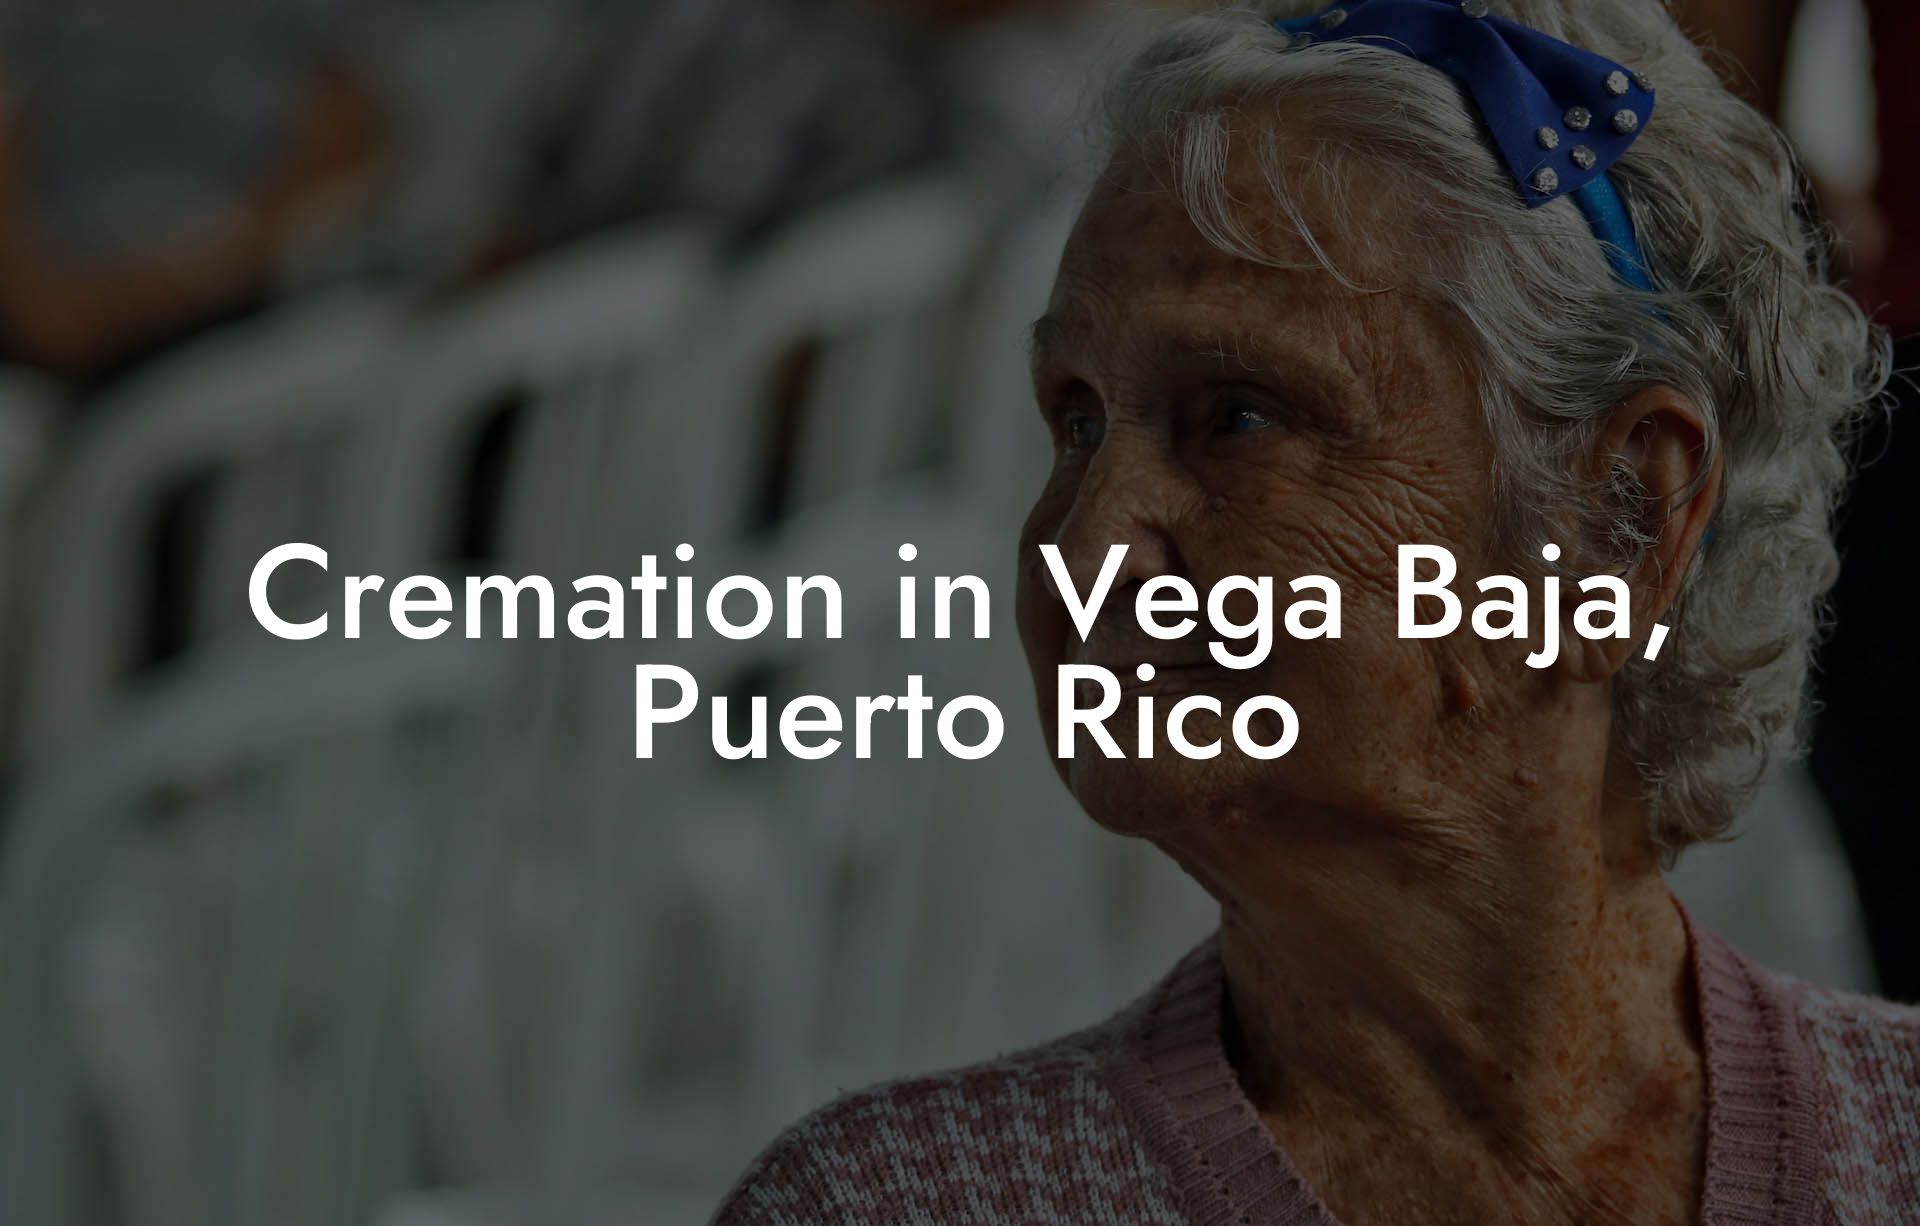 Cremation in Vega Baja, Puerto Rico